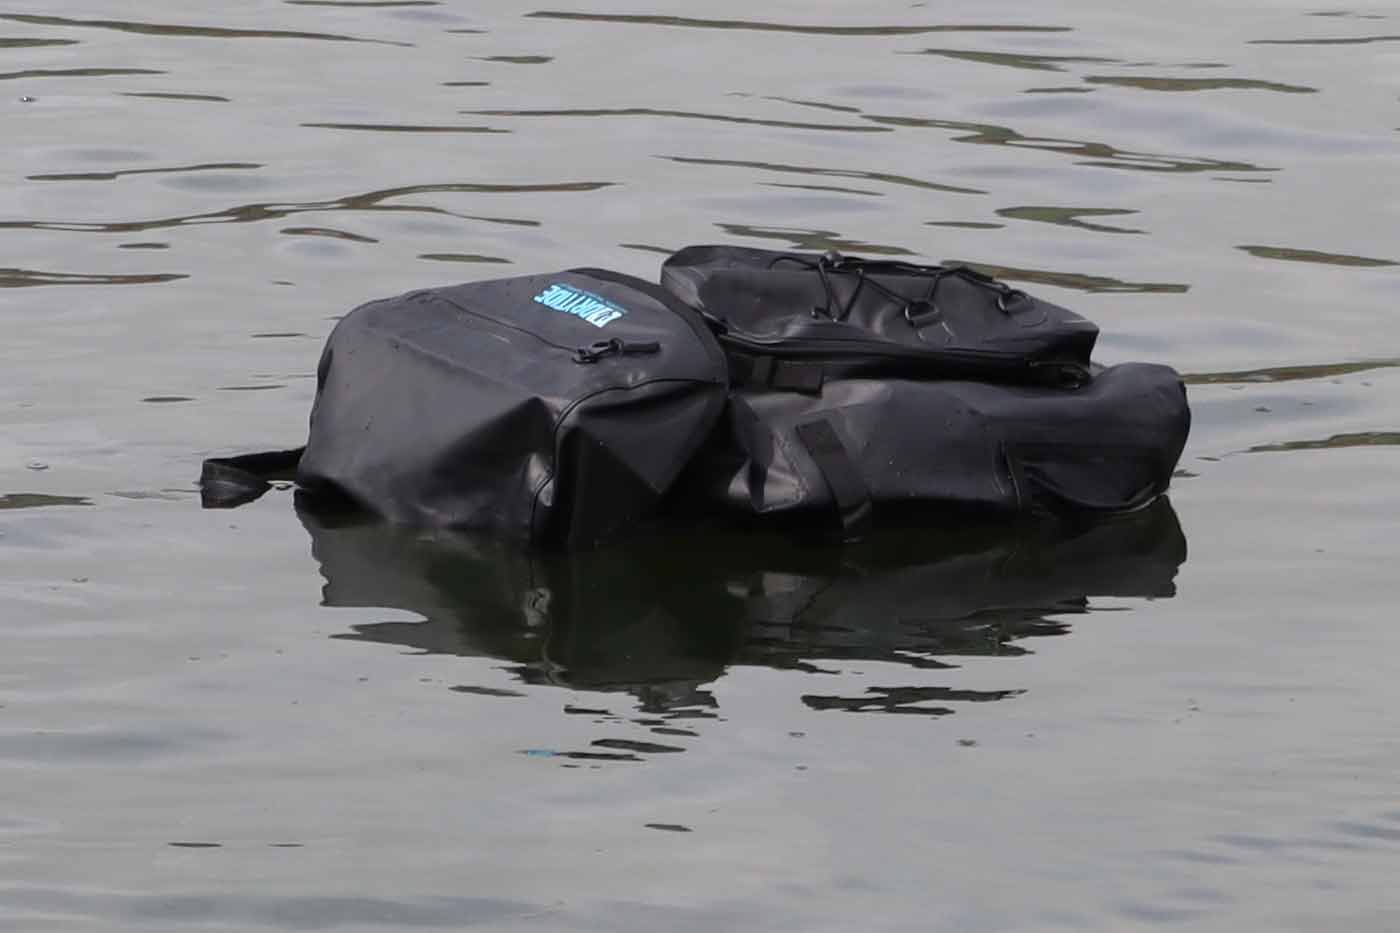 DryTide 50L waterproof backpack review: 100% waterproof fabric & seams